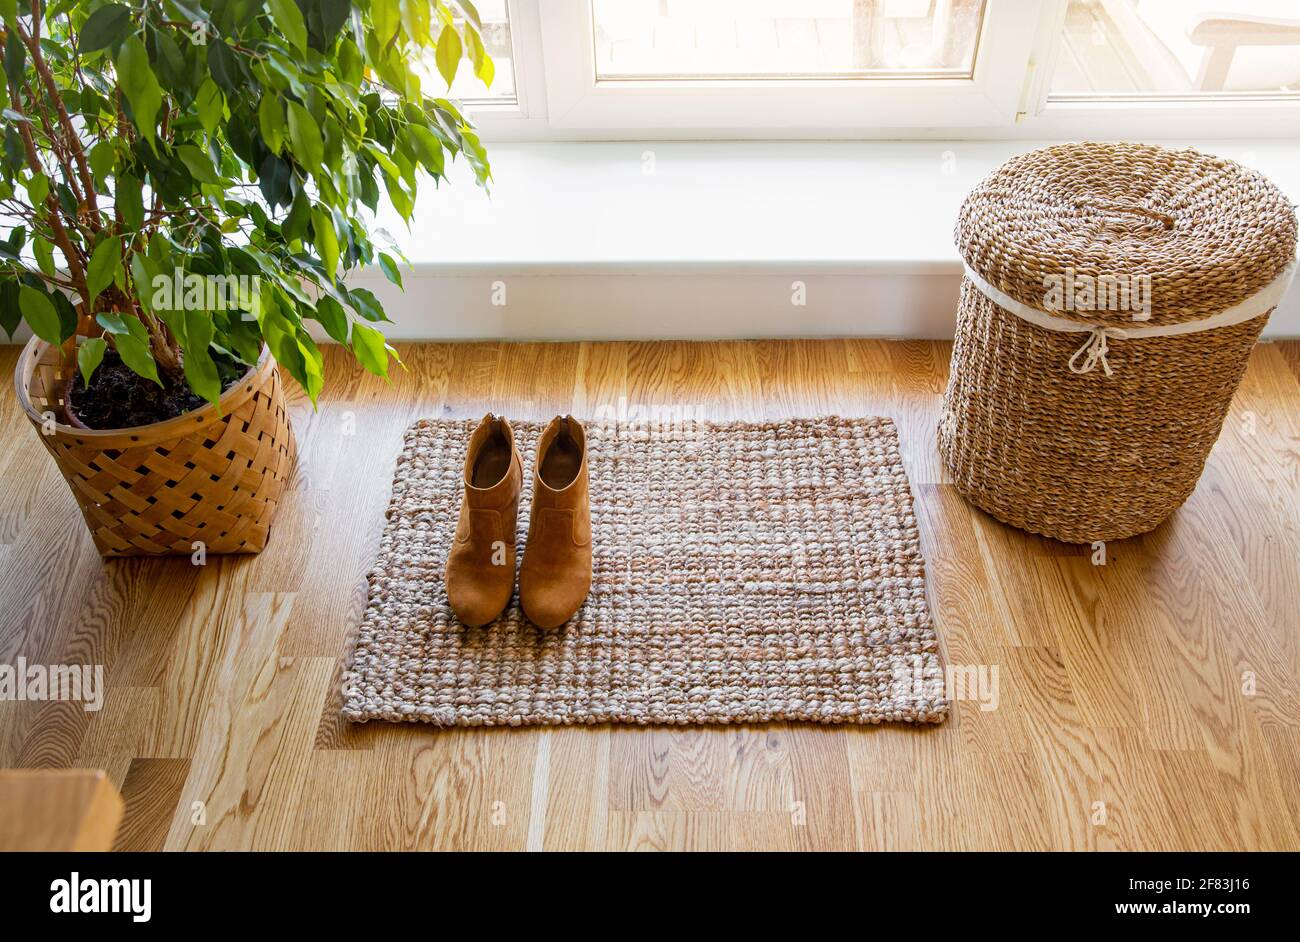 Hartholzboden mit Jute-Fußmatte, Schuhen und Blumentopf und Seegraswaschkorb am Fenster. Natürliche materielle Objekte im Heimkonzept. Inneneinrichtung. Stockfoto